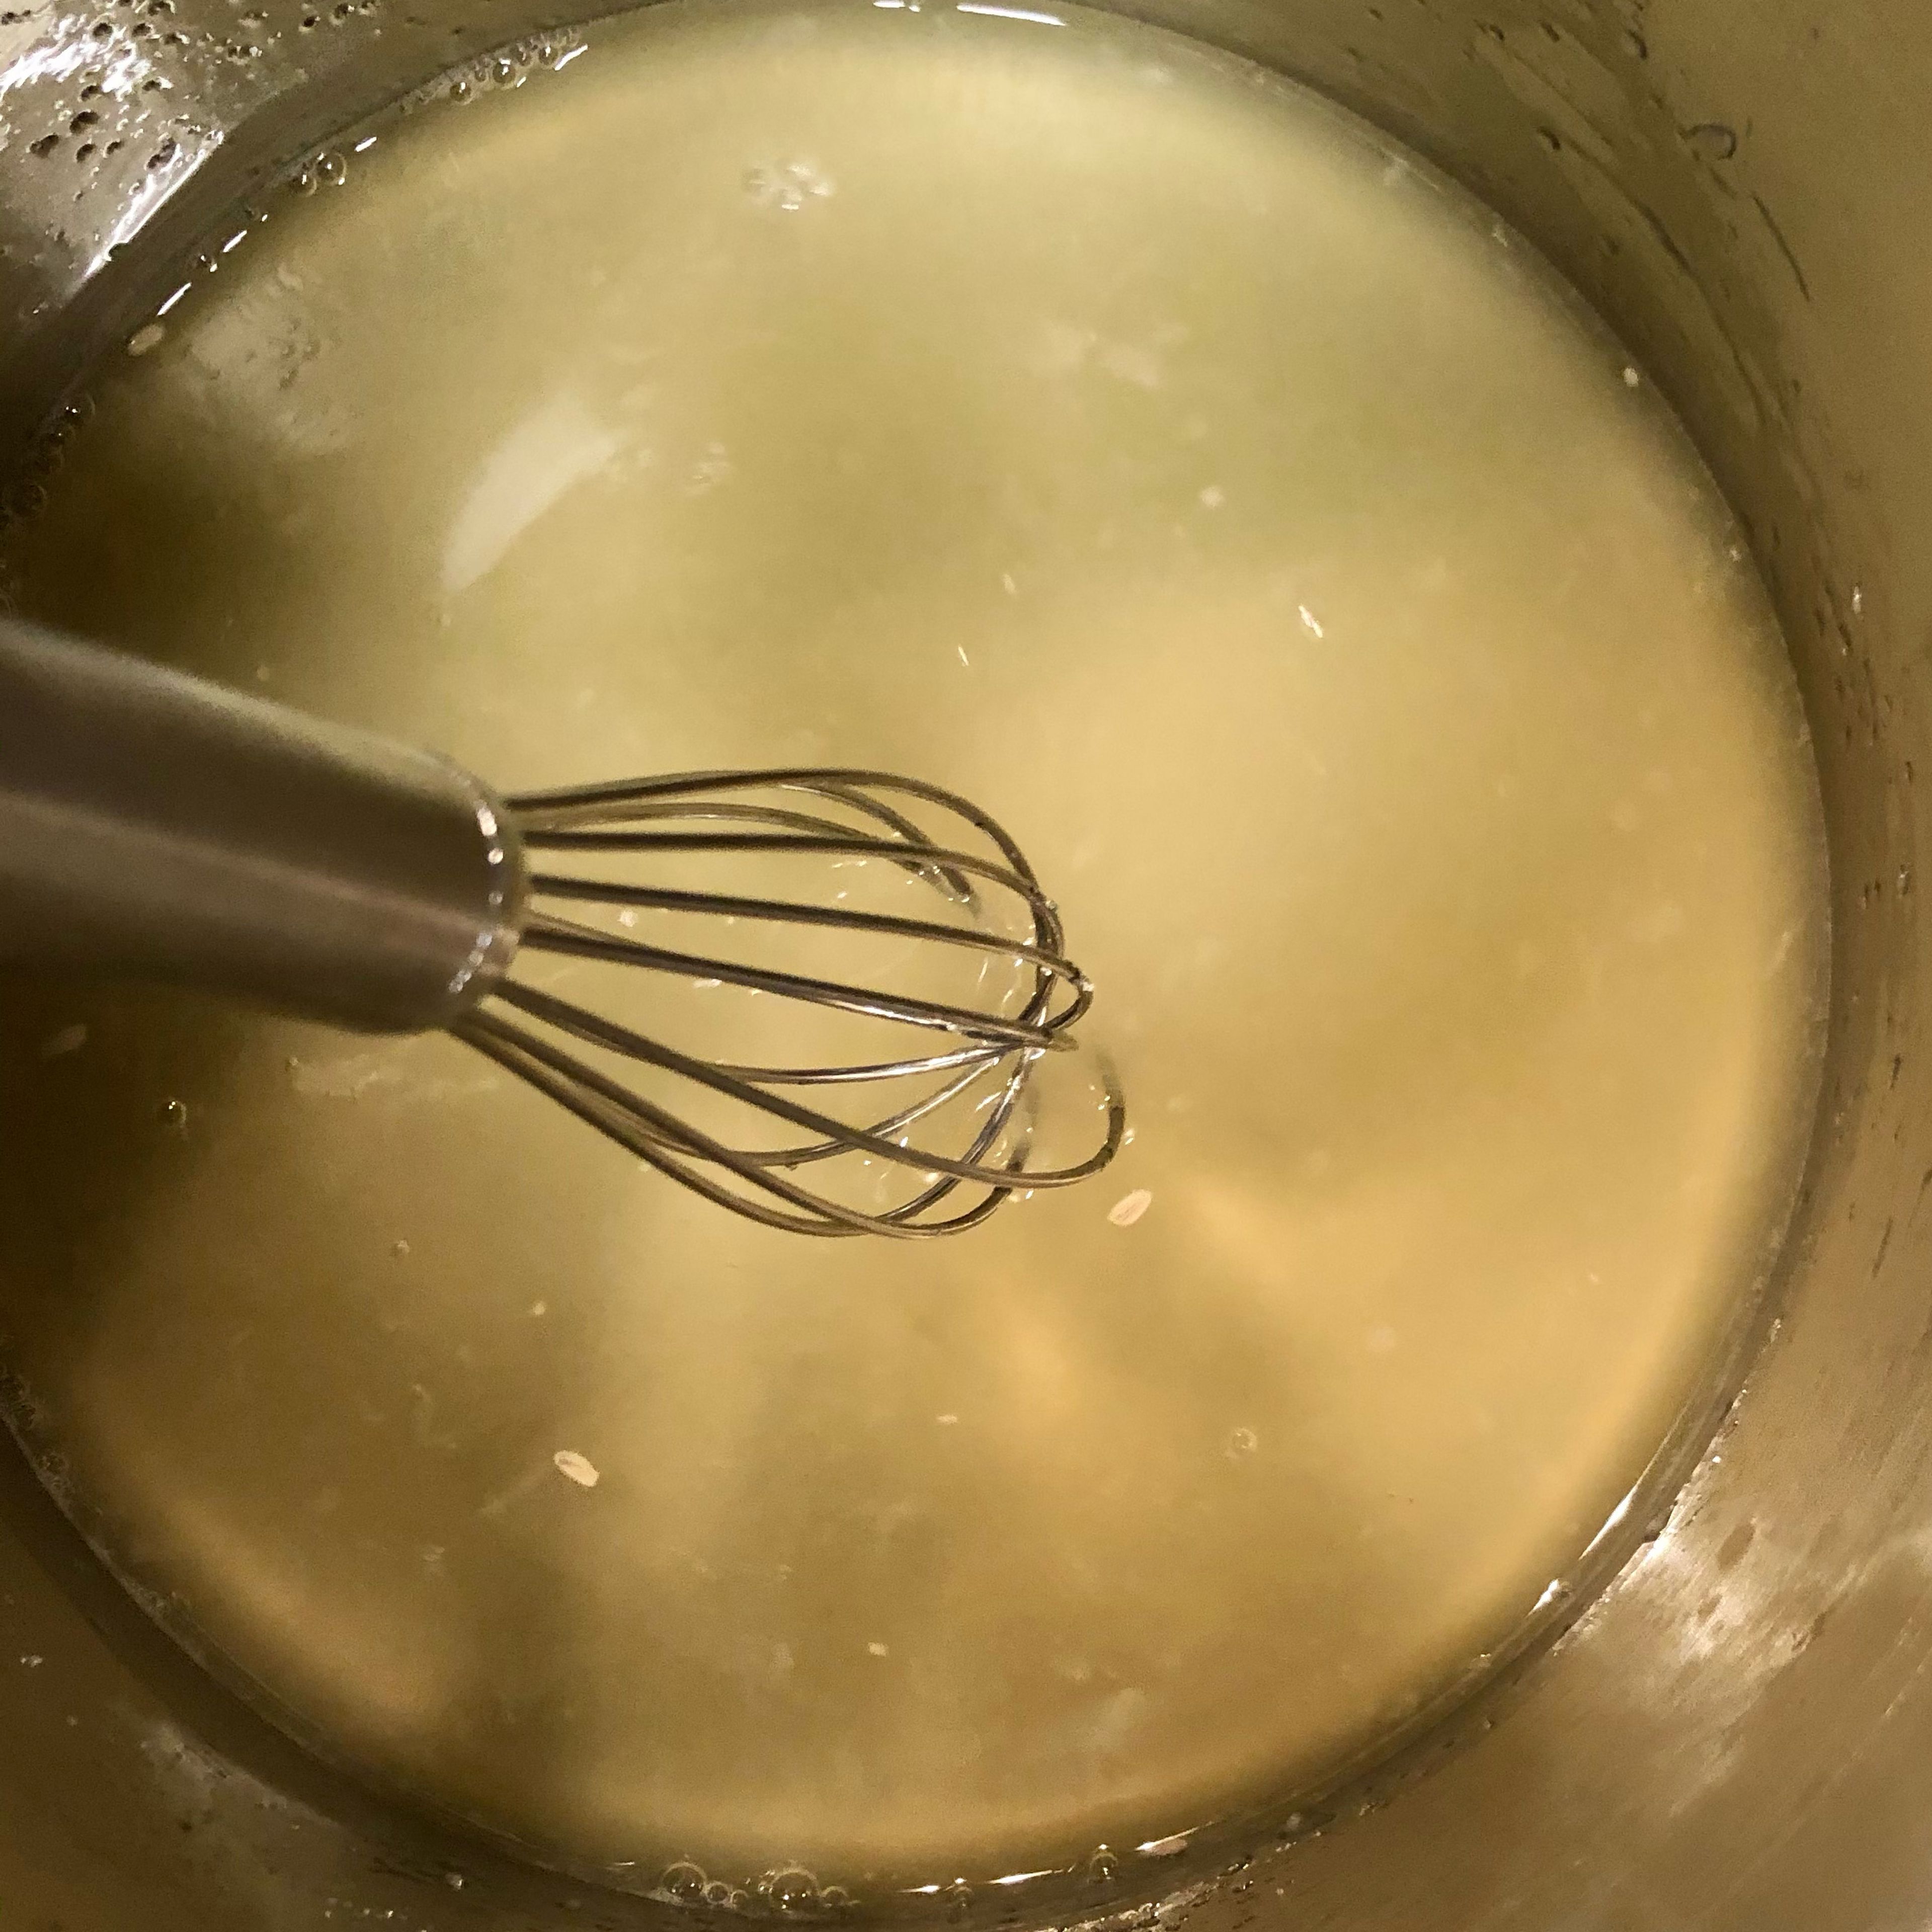 Während der Kuchen nun bäckt, wird der Zitronensirup zubereitet. Dafür wird der Zucker, der Zitronensaft und die Prise Salz in einen kleinen Topf gegeben und bei mittlerer Hitze köcheln gelassen. Bis sich der Zucker aufgelöst hat, wird durchgehend gerührt. Dann wird der Topf abgedeckt, vom Herd genommen und der Sirup auf Zimmertemperatur abgekühlt.